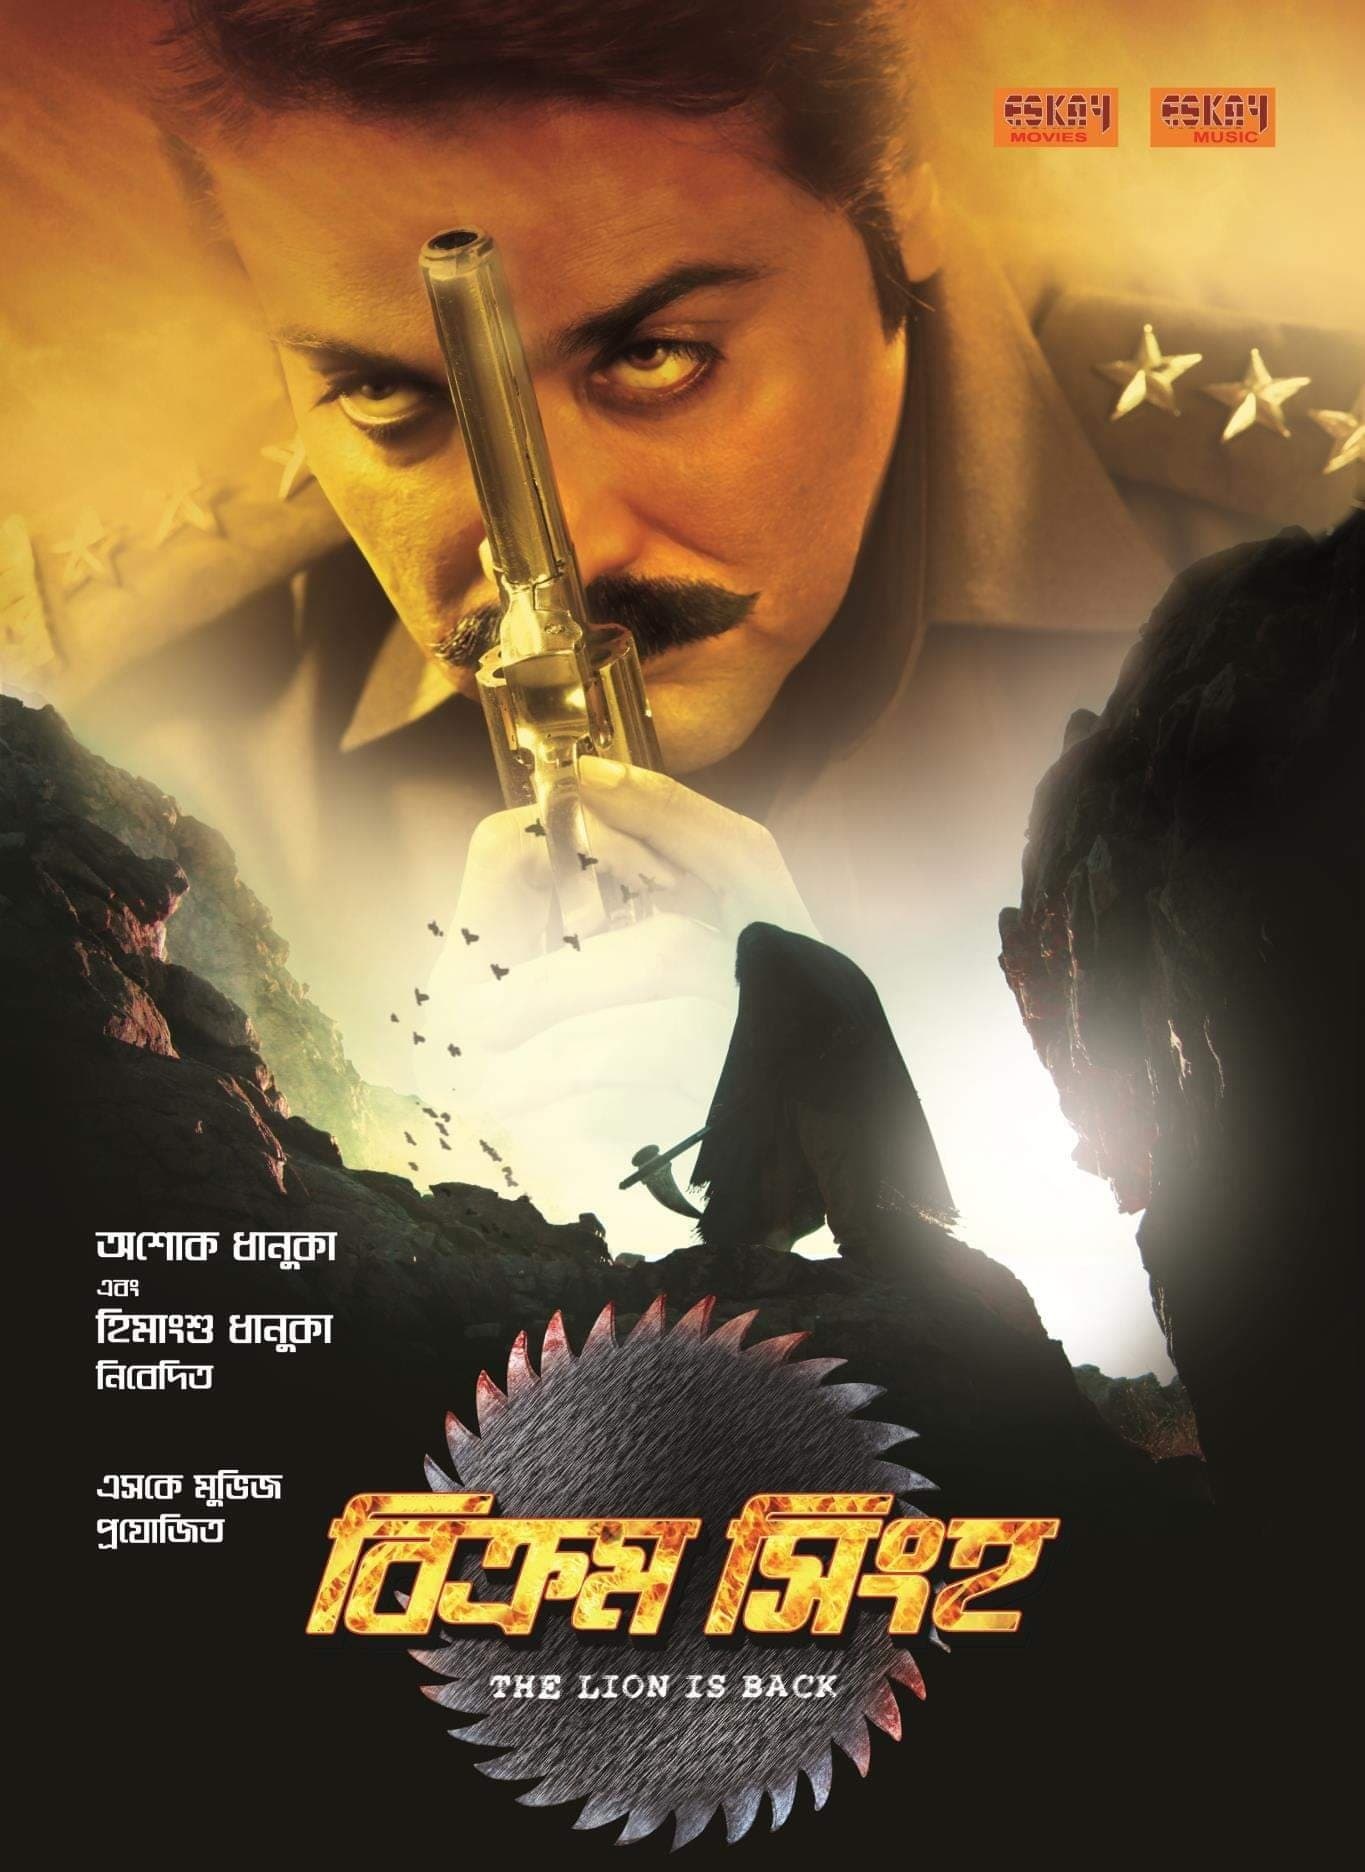 Bikram Singha - The Lion Is Back (2012)